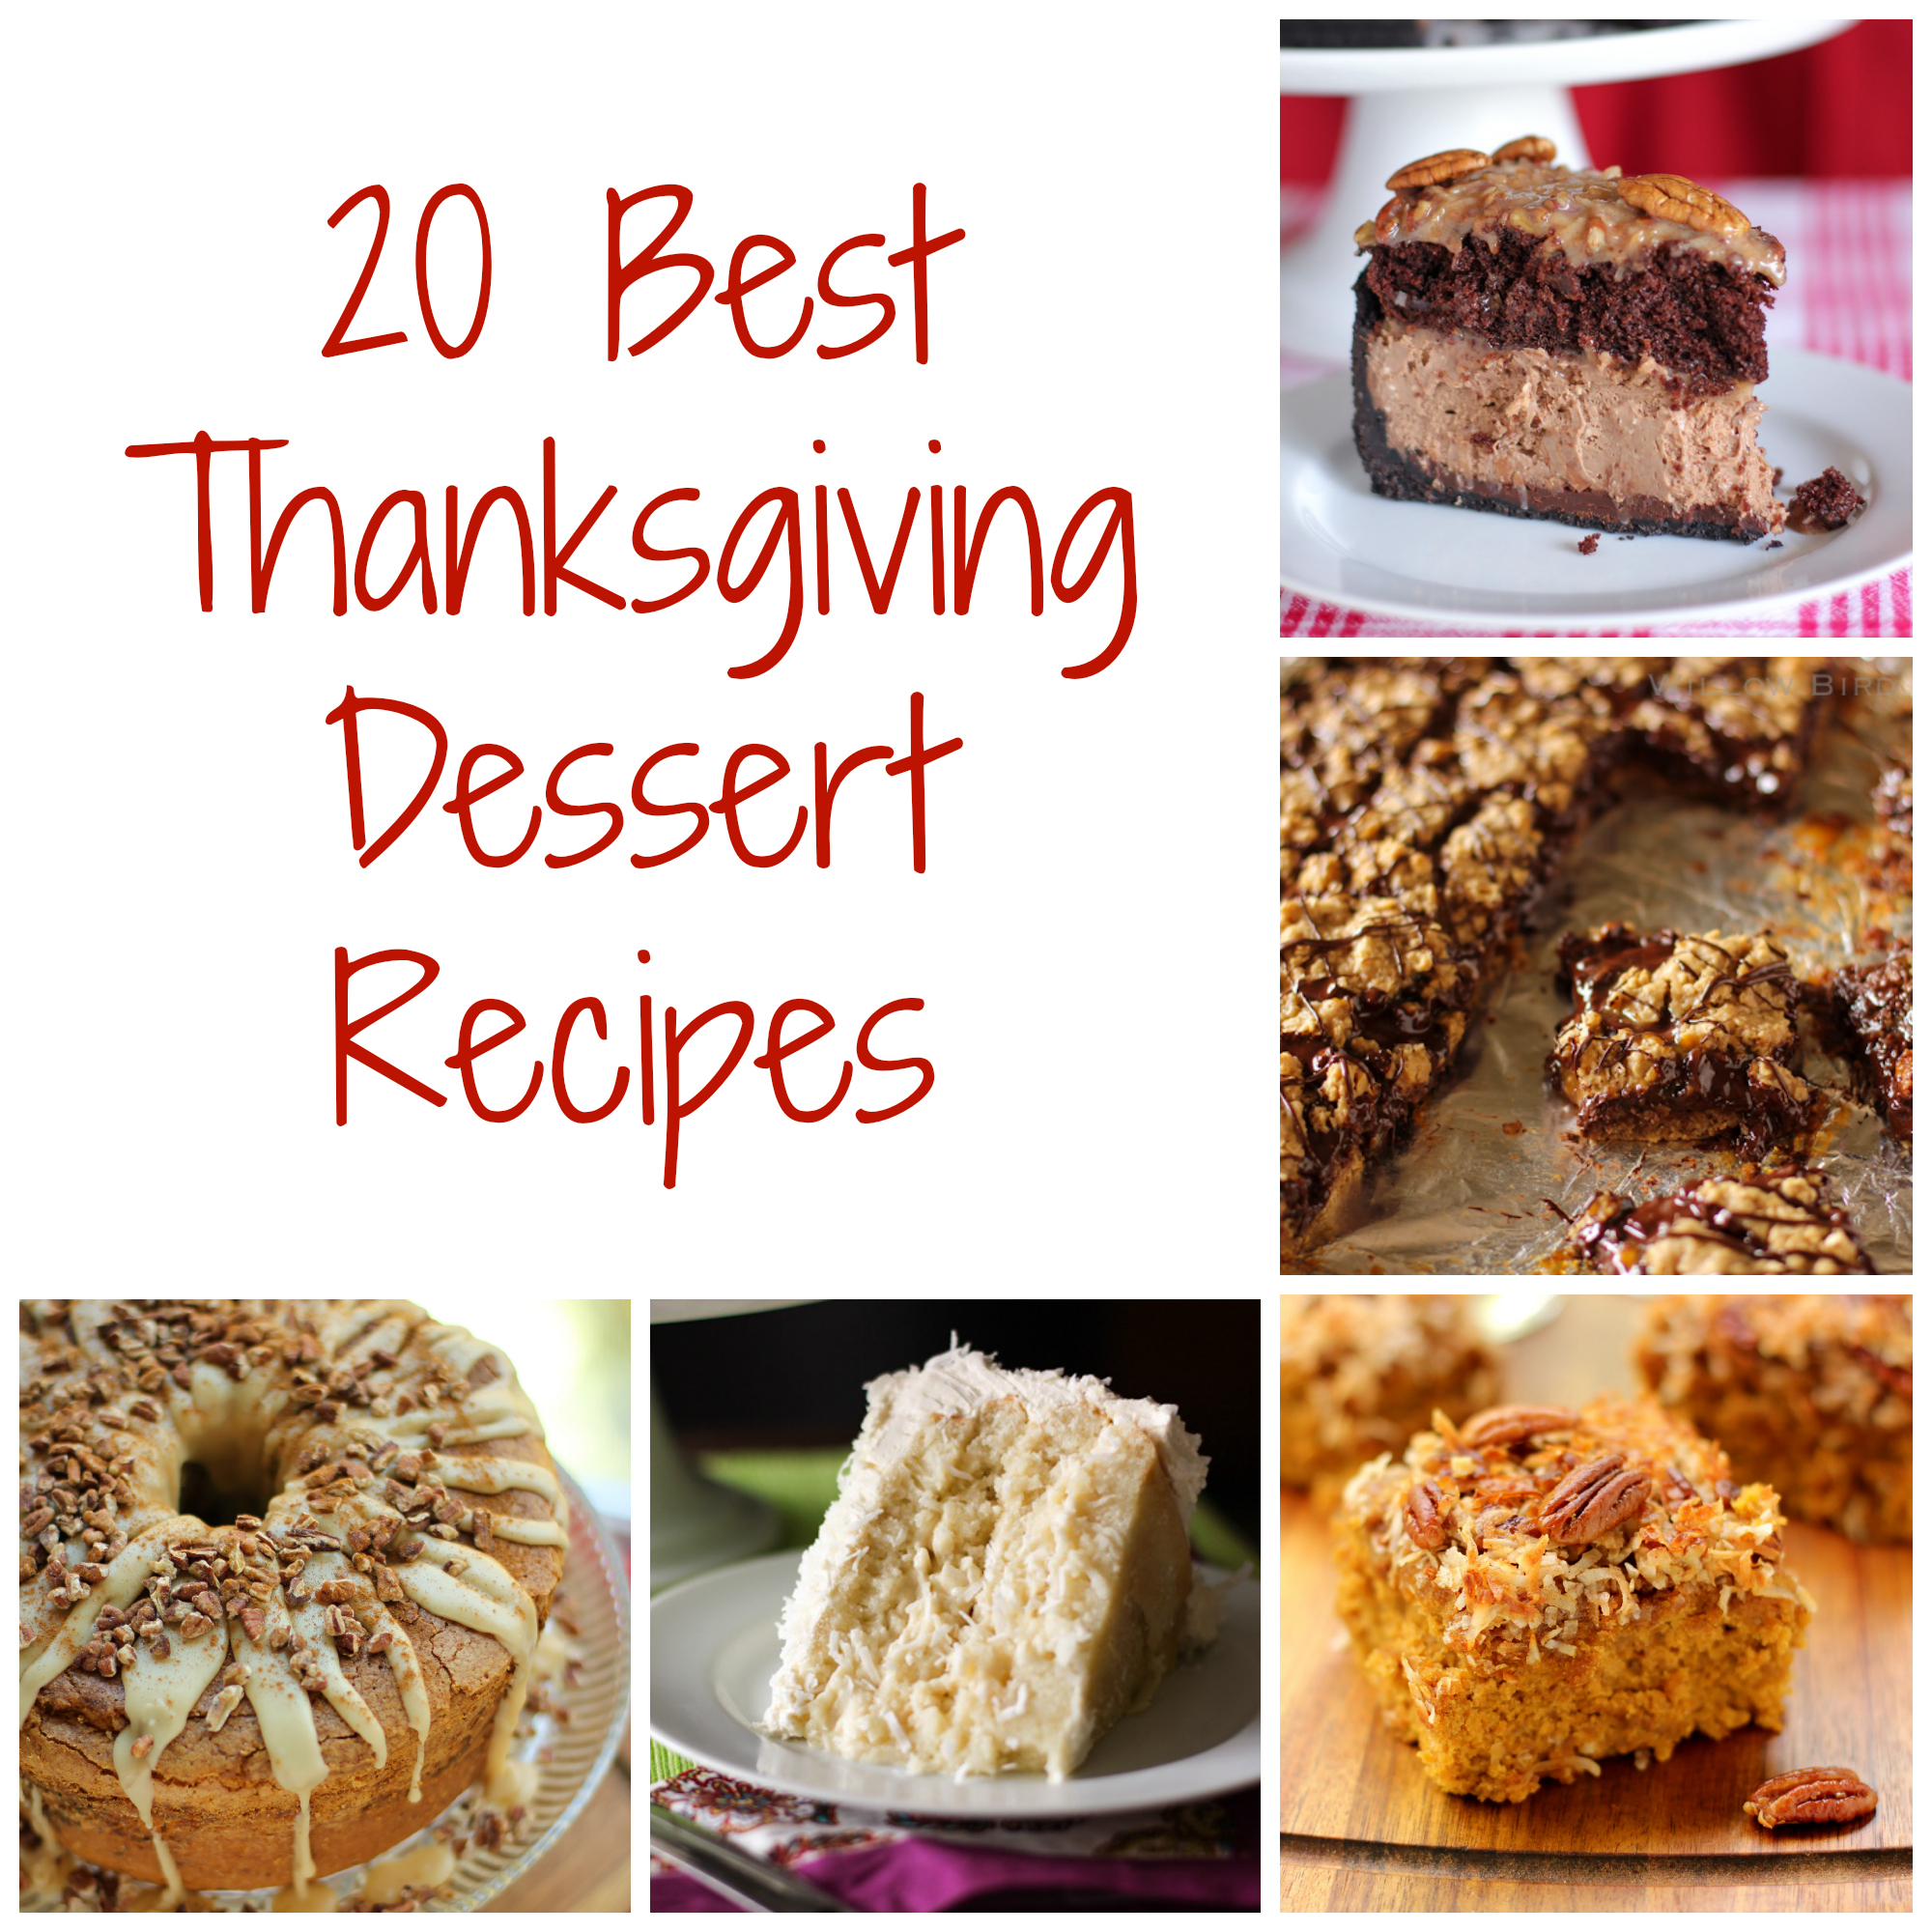 Willow Bird Baking's 20 Best Thanksgiving Dessert Recipes